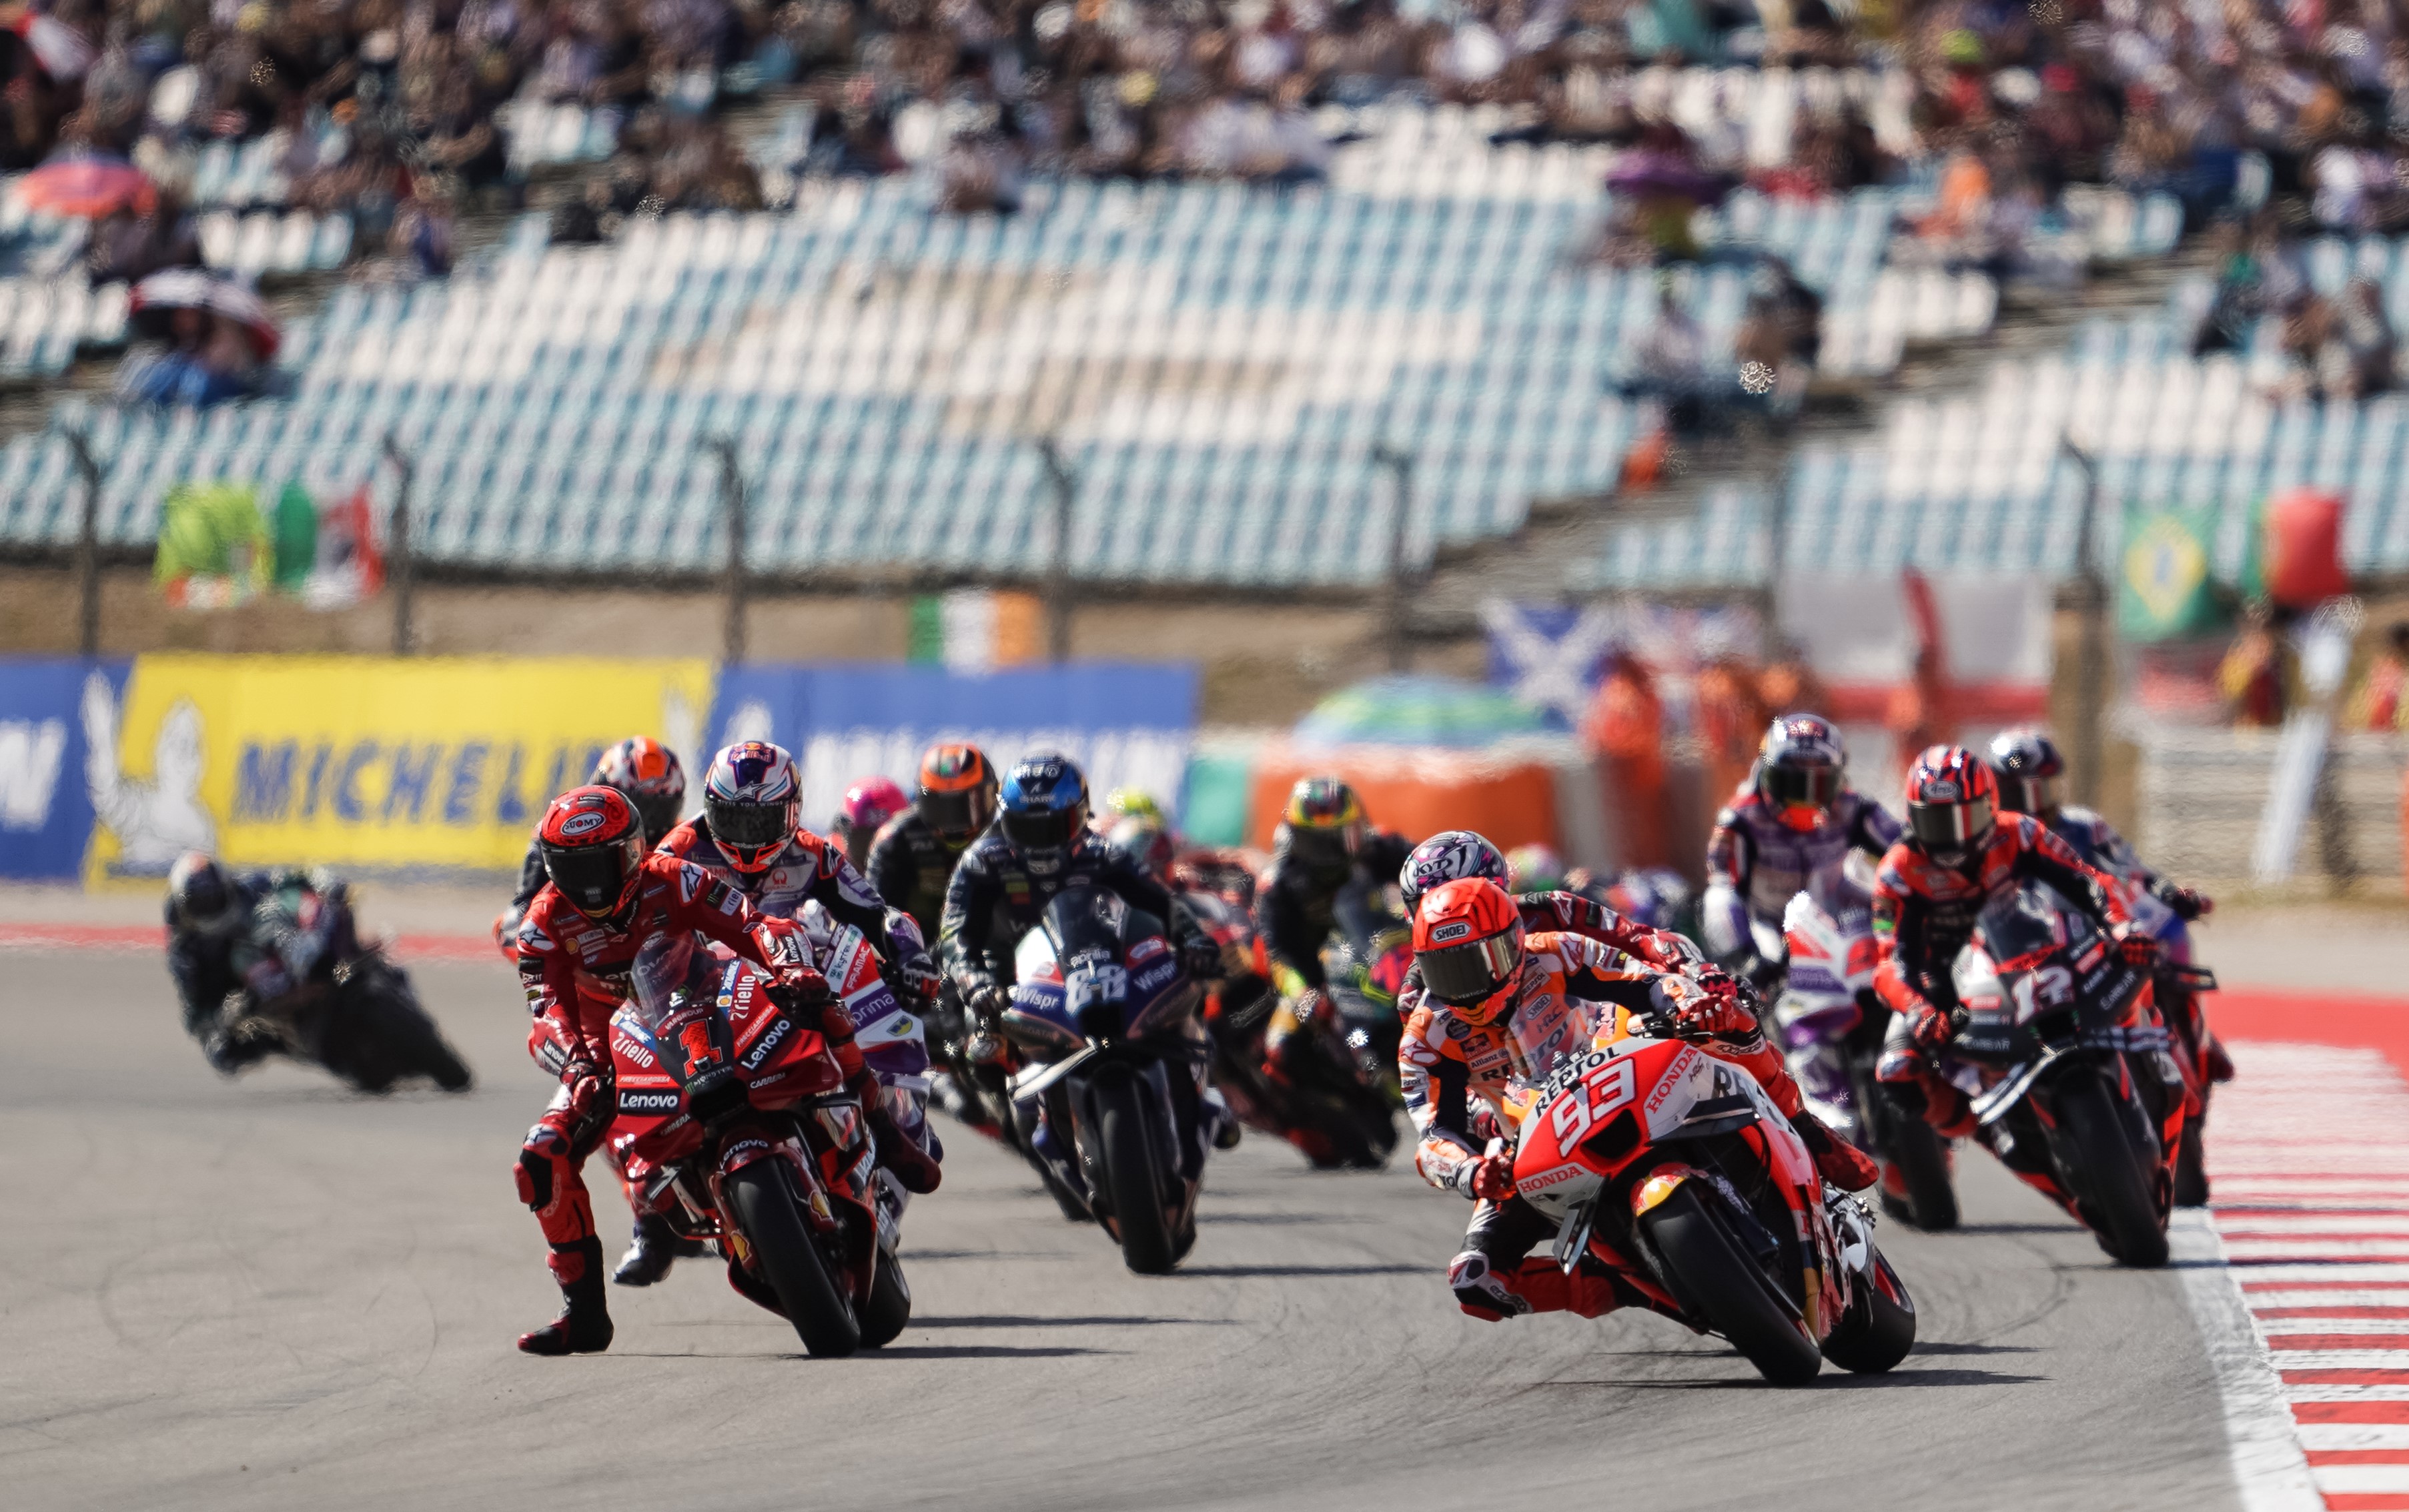 Jadwal Lengkap MotoGP Portugal 2024, Trek Andalan Pecco Bagnaia dan Fabio Quaratararo